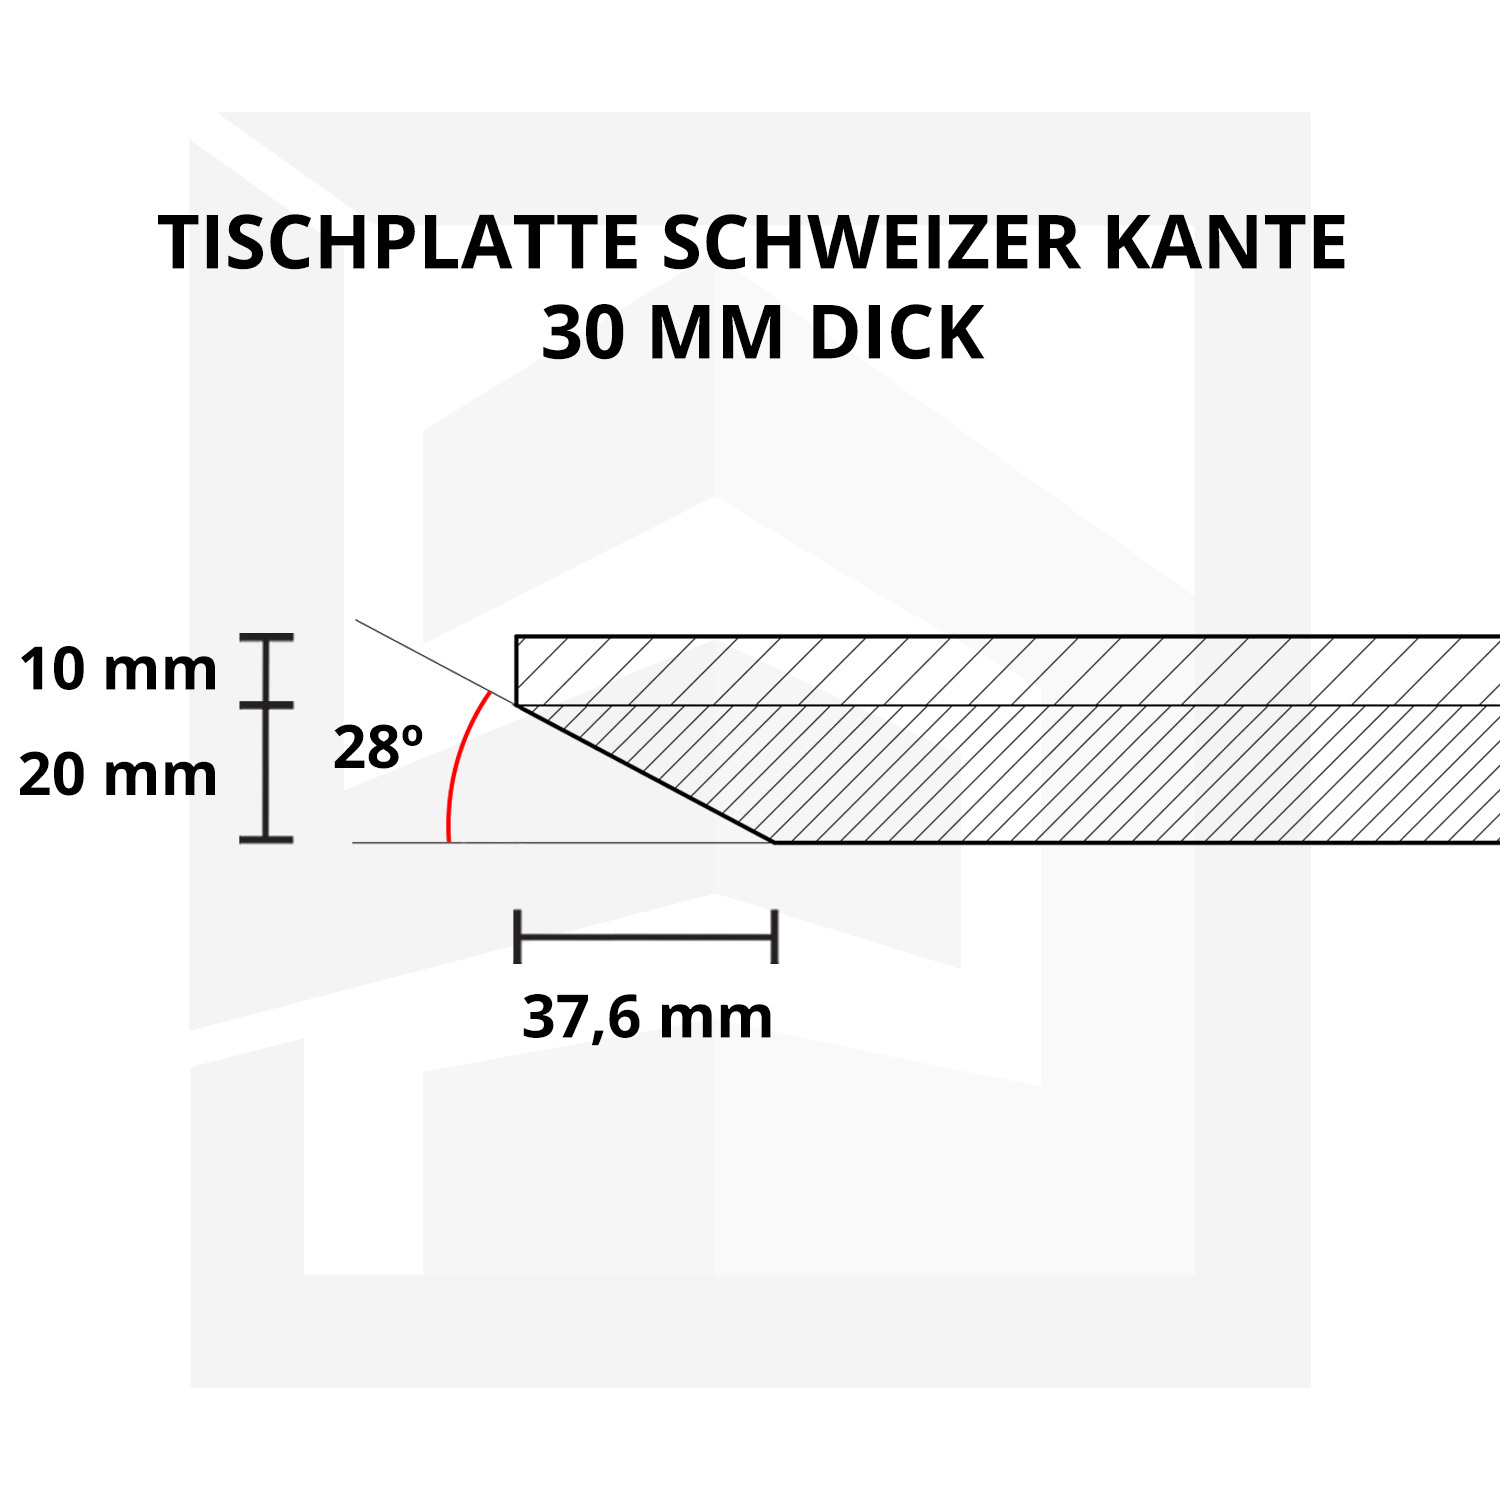  Tischplatte Eiche - Schweizer Kante - 2,7 cm dick (1-Schicht) - Breite Lamellen (10 - 12 cm breit) - Eichenholz A-Qualität - verleimt & künstlich getrocknet (HF 8-12%) - verschiedene Größen